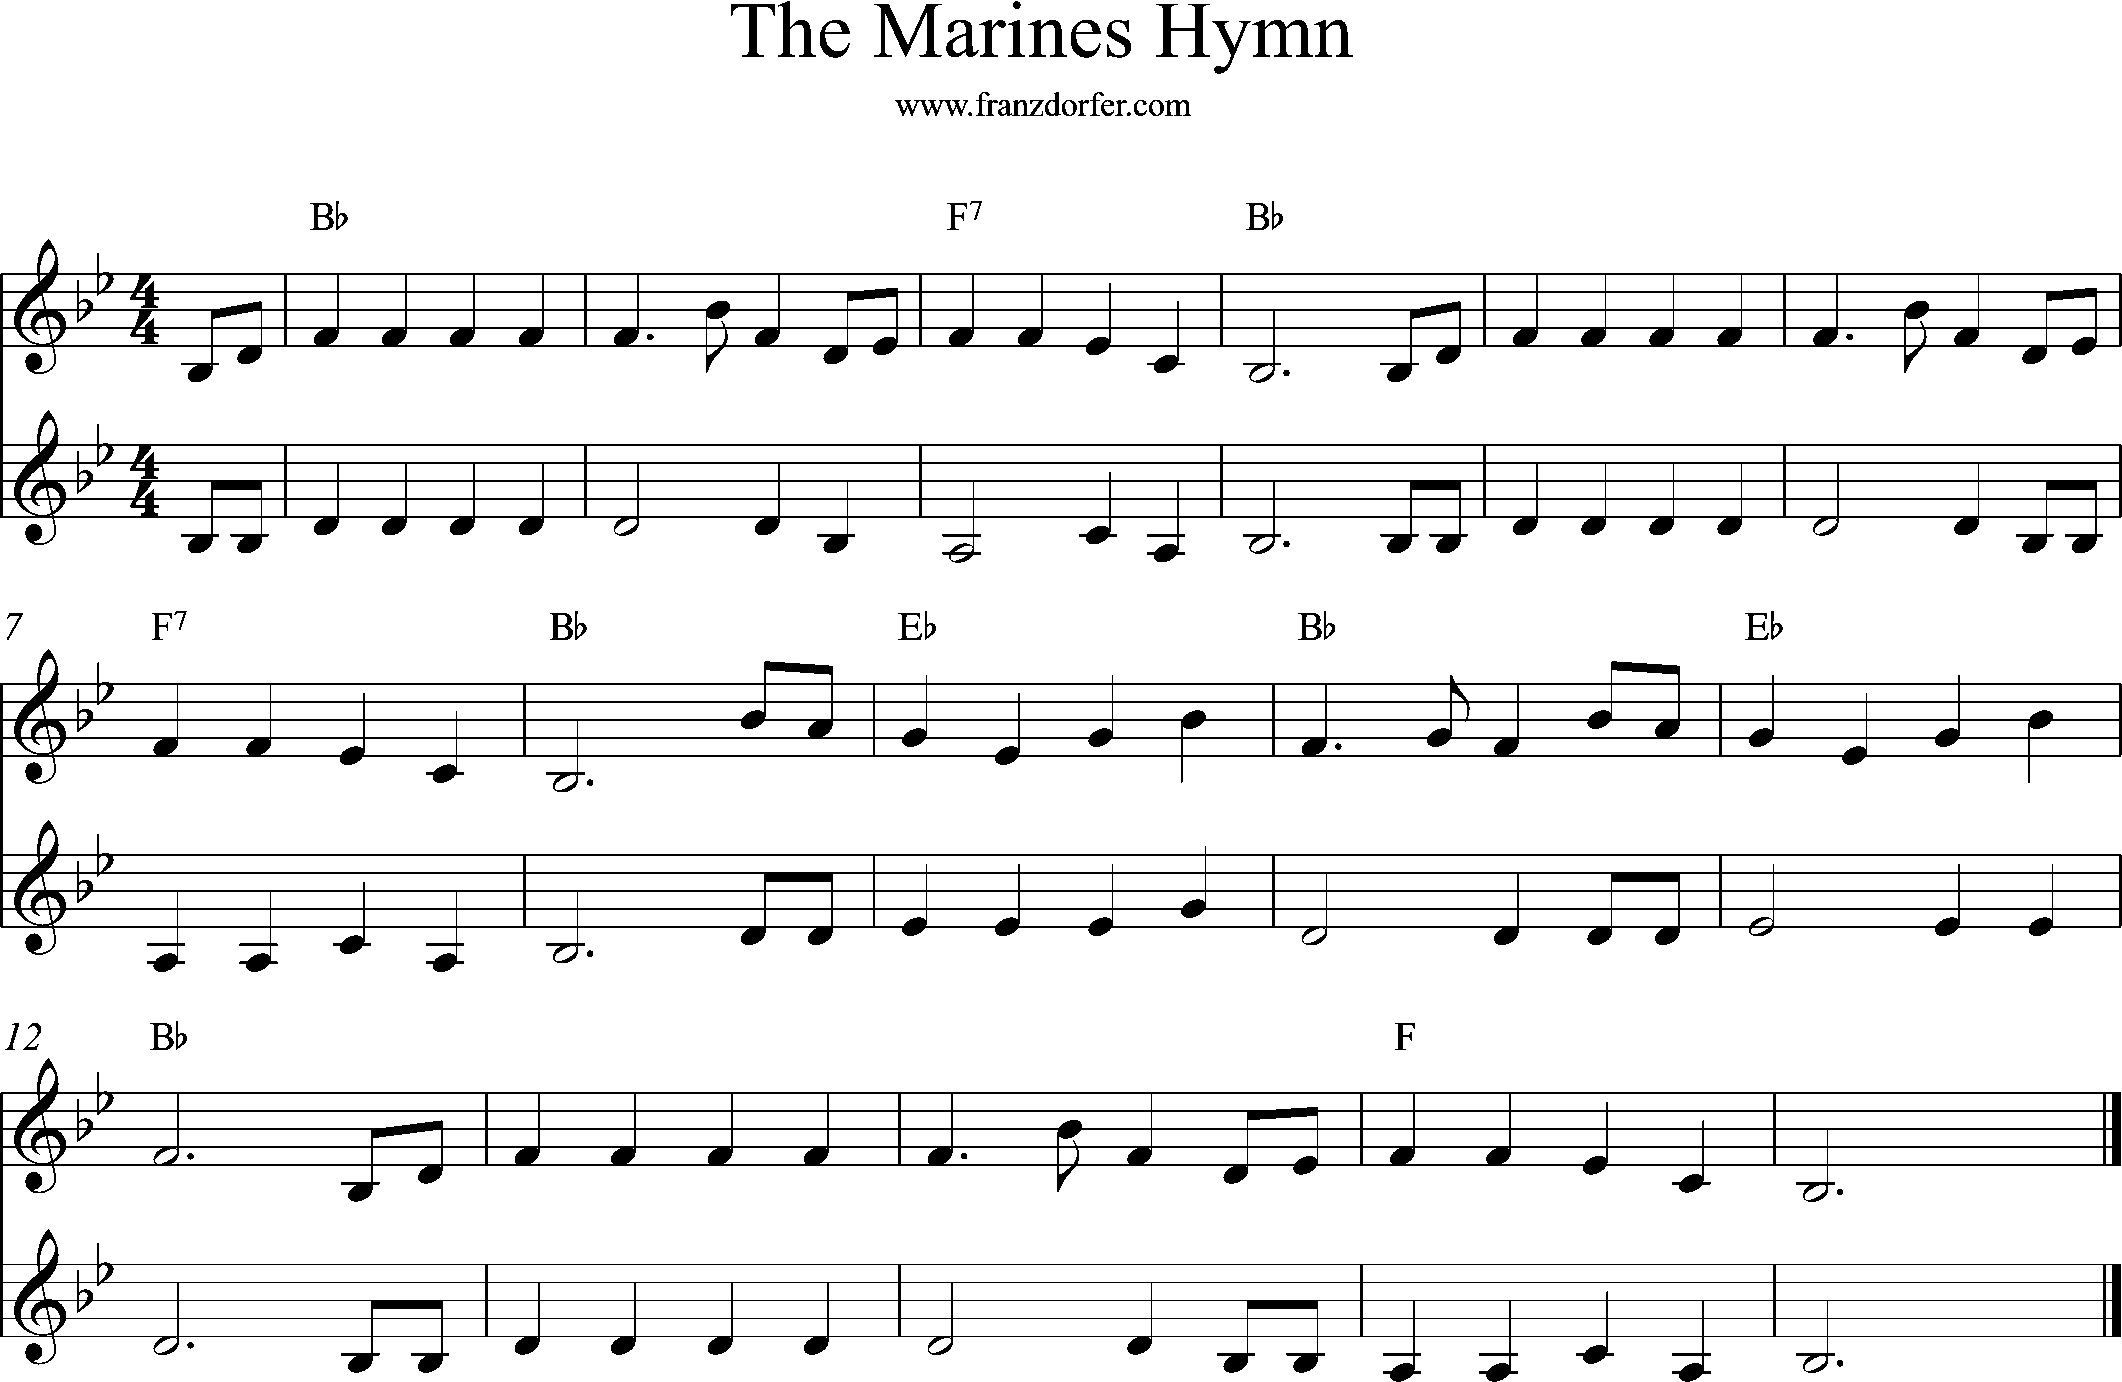 sheetmusic, Bb-Major, The marines Hymn